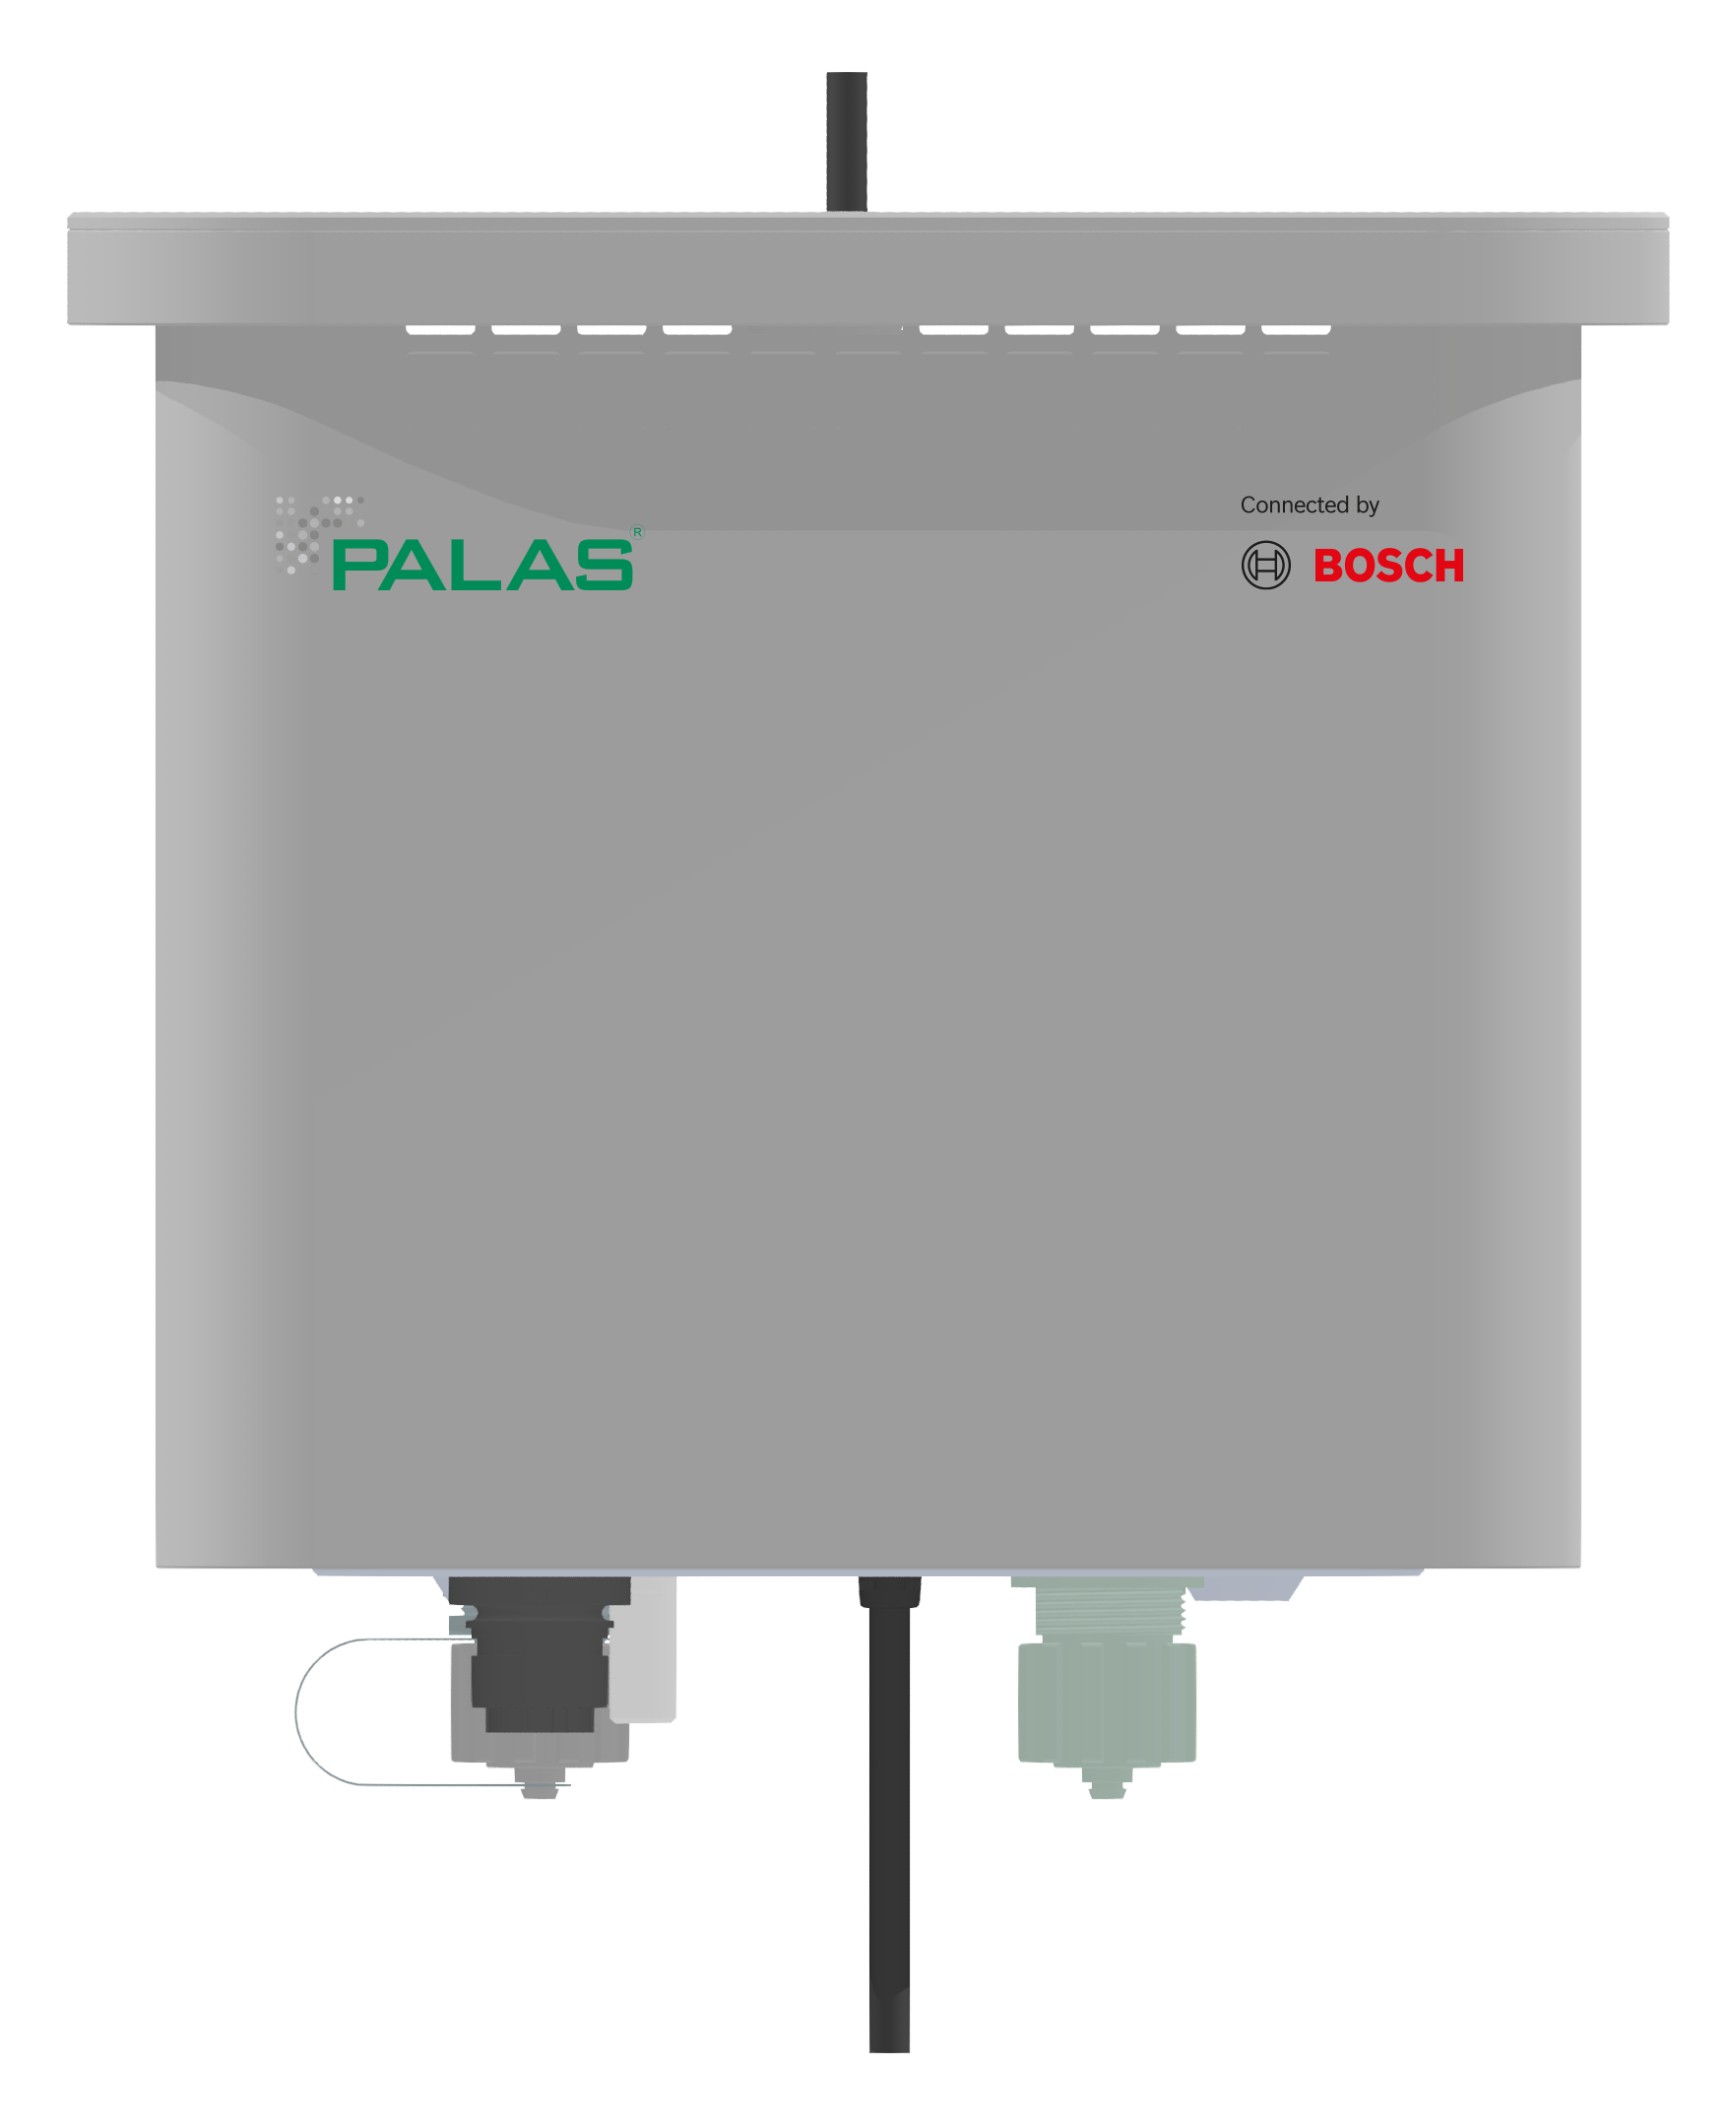 Collaborazione tra Bosch e Palas, specialista nelle tecnologie di misurazione, con sede a Karlsruhe, per una migliore qualità dell’aria